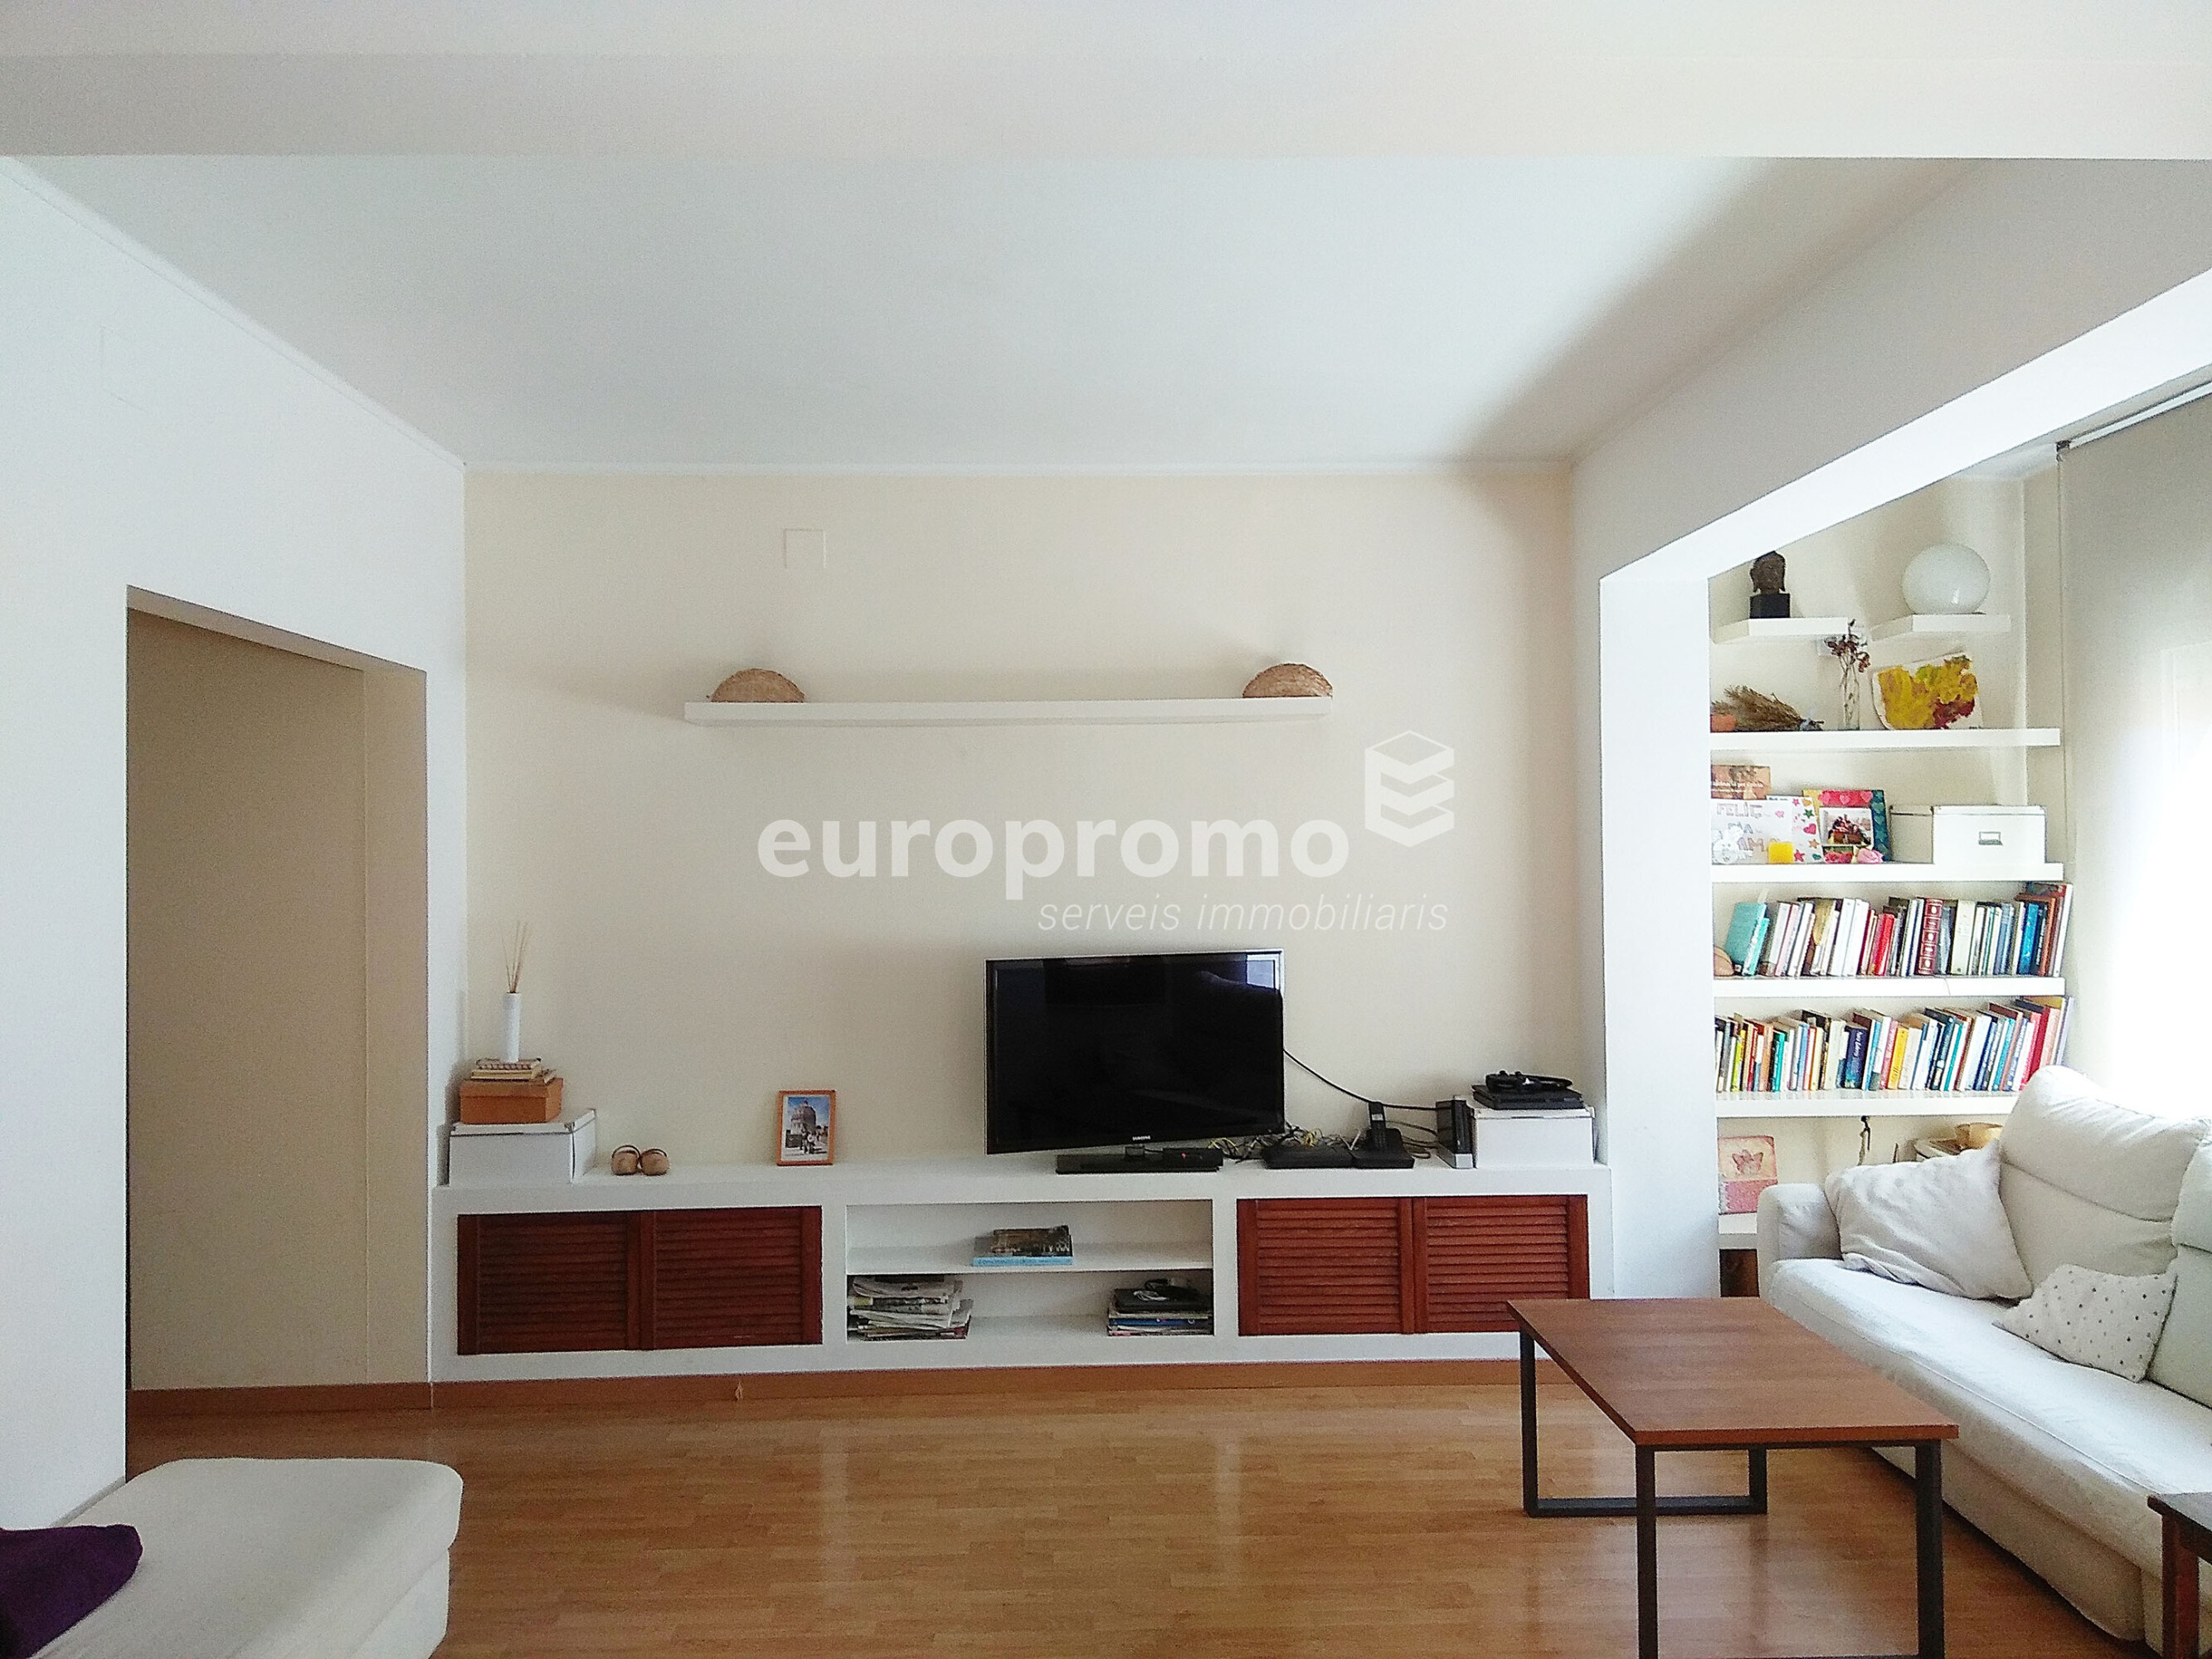 Fantástico piso de 90 m² en el centro de Girona